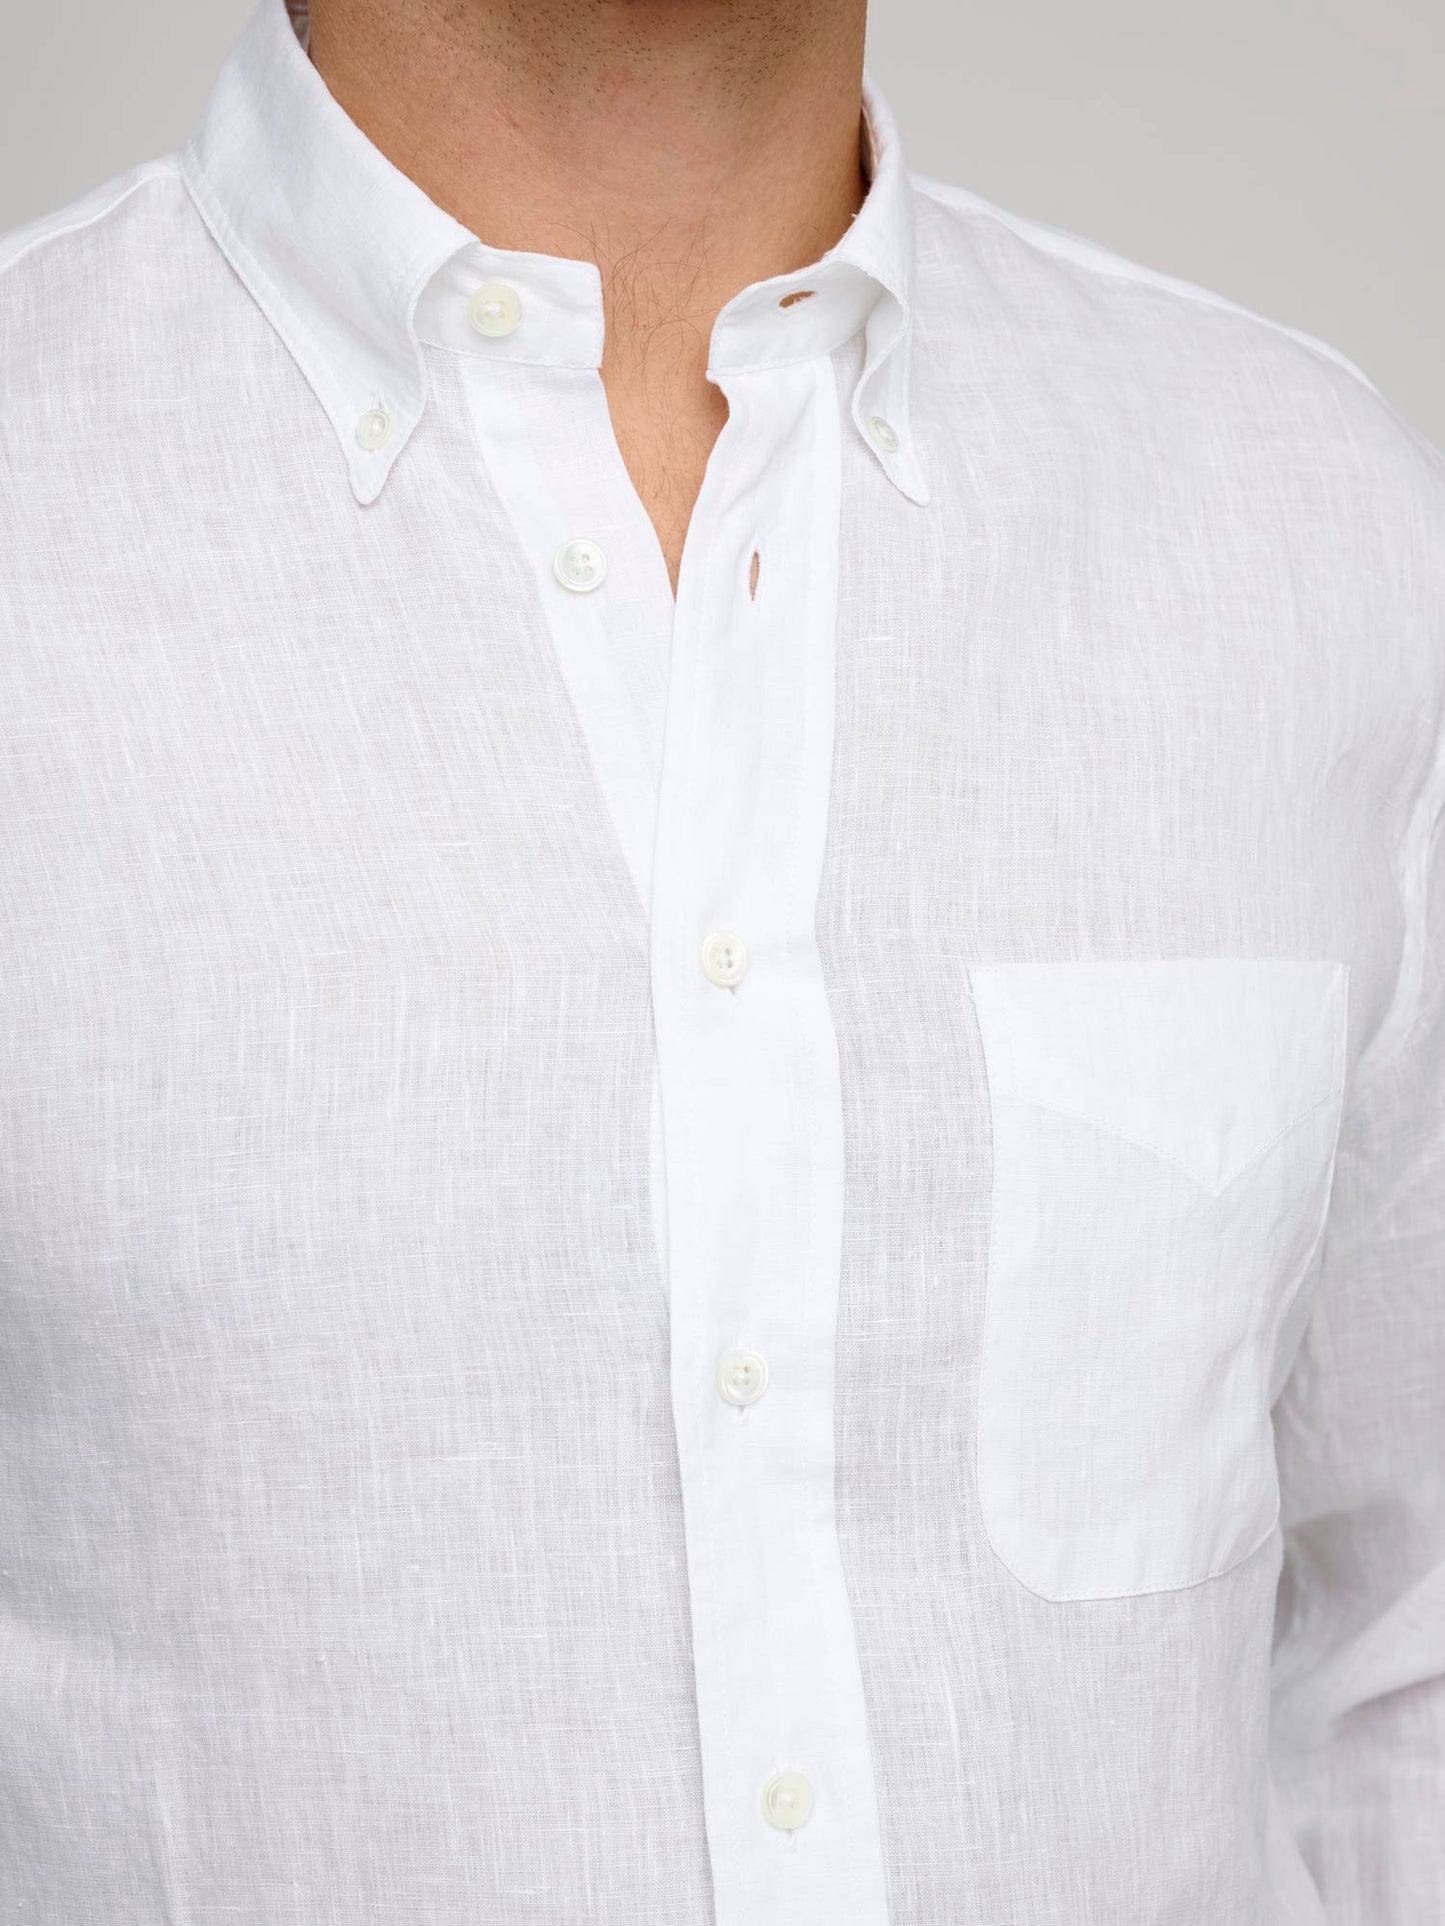 American BD Linen Shirt, White